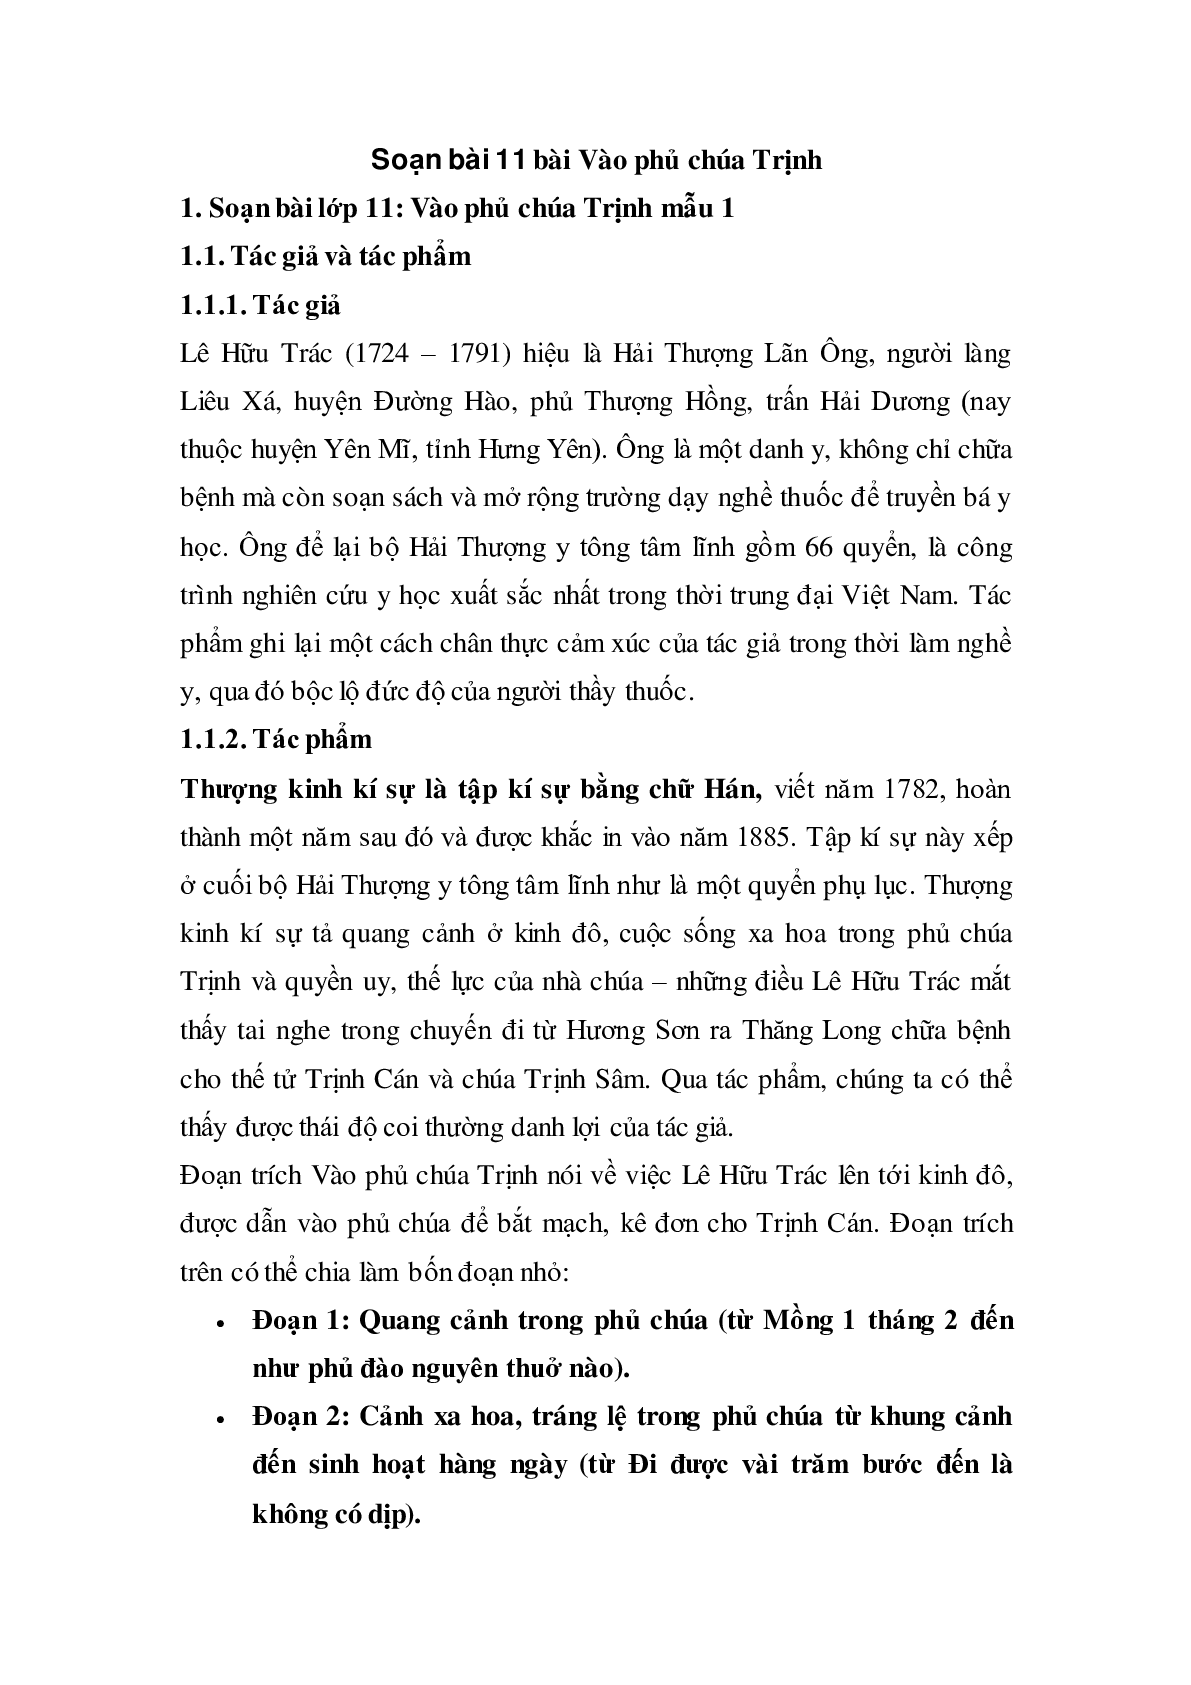 Soạn bài Vào phủ chúa Trịnh của Lê Hữu Trác - ngắn nhất Soạn văn 11 (trang 1)